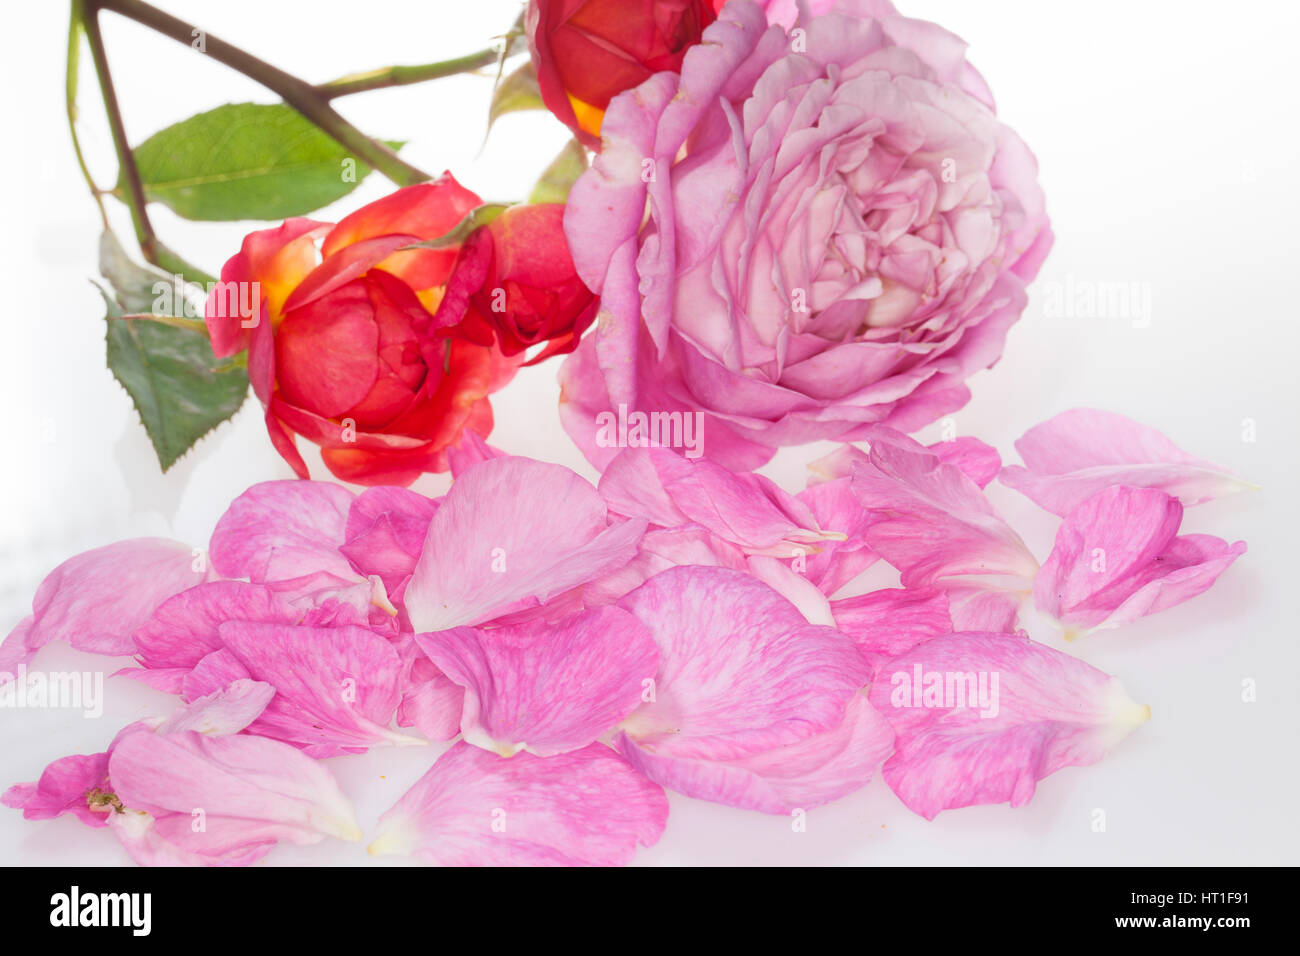 Rose, Rosen-Blüten, Blütenblätter Blütenblatt Rosen-Blütenblätter,,,,, Kulturrose Garten-Rose Gartenrose, Kultur-Rose, Rosa, Rosa De spec. Foto de stock